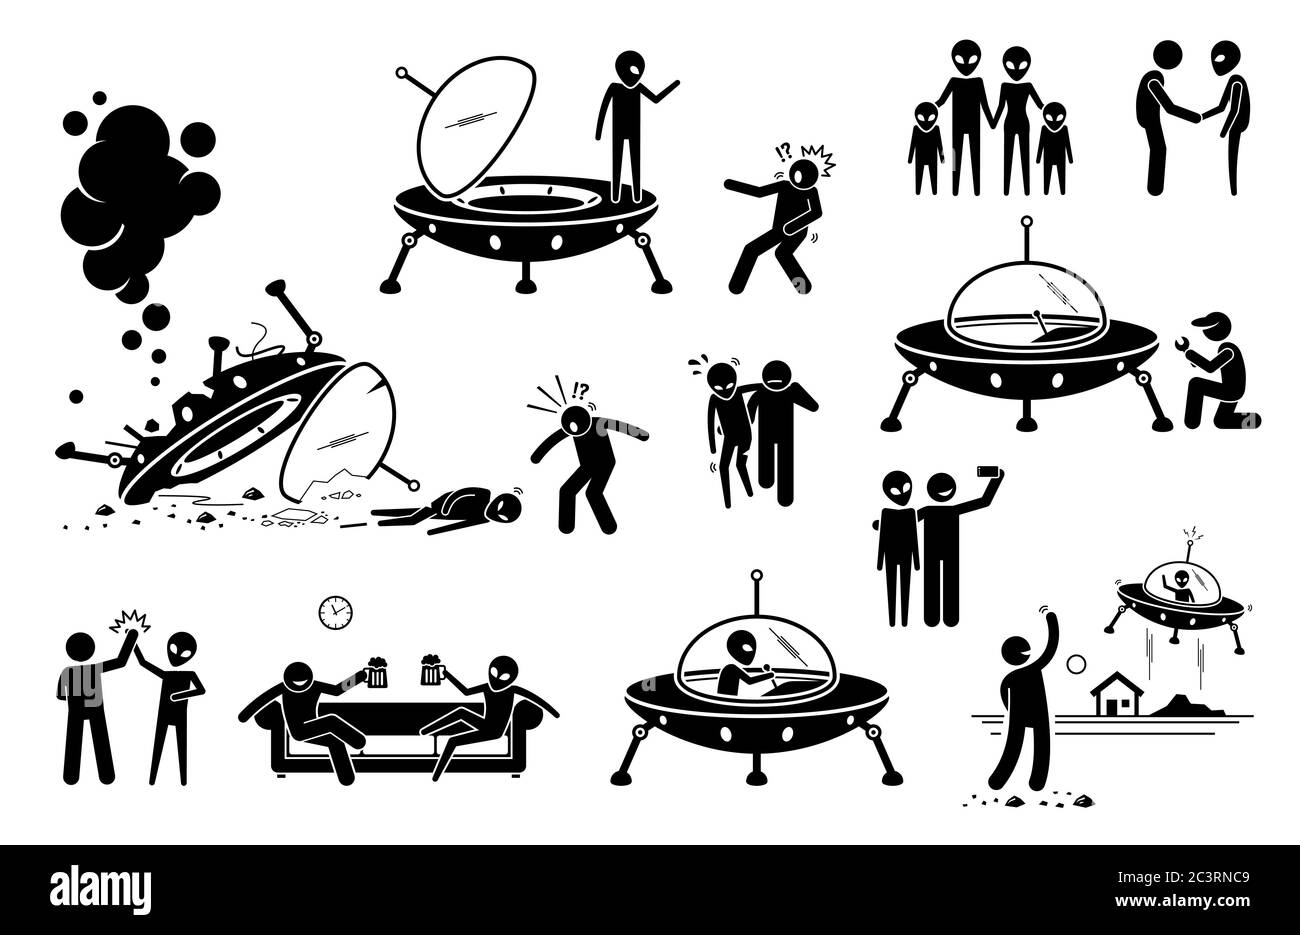 Alien UFO und Mensch ersten Kontakt und Freund werden. Vektor-Illustration von außerirdischen UFO Ankunft auf dem Planeten Erde und Absturz des Raumschiffs. Mann Rettung al Stock Vektor